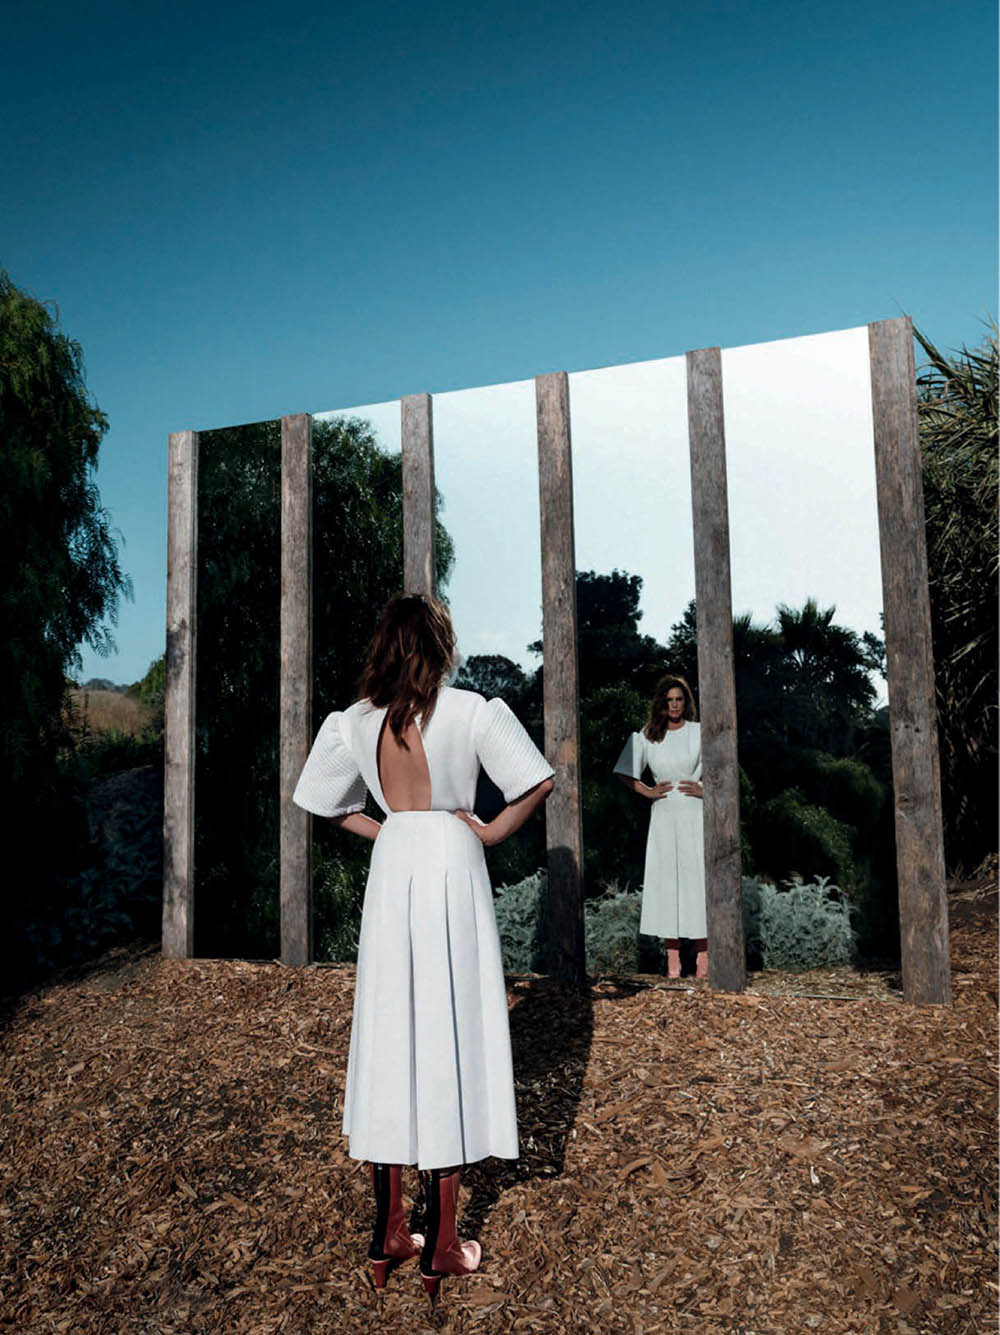 Cindy Crawford covers Vanity Fair Spain September 2020 by Juankr